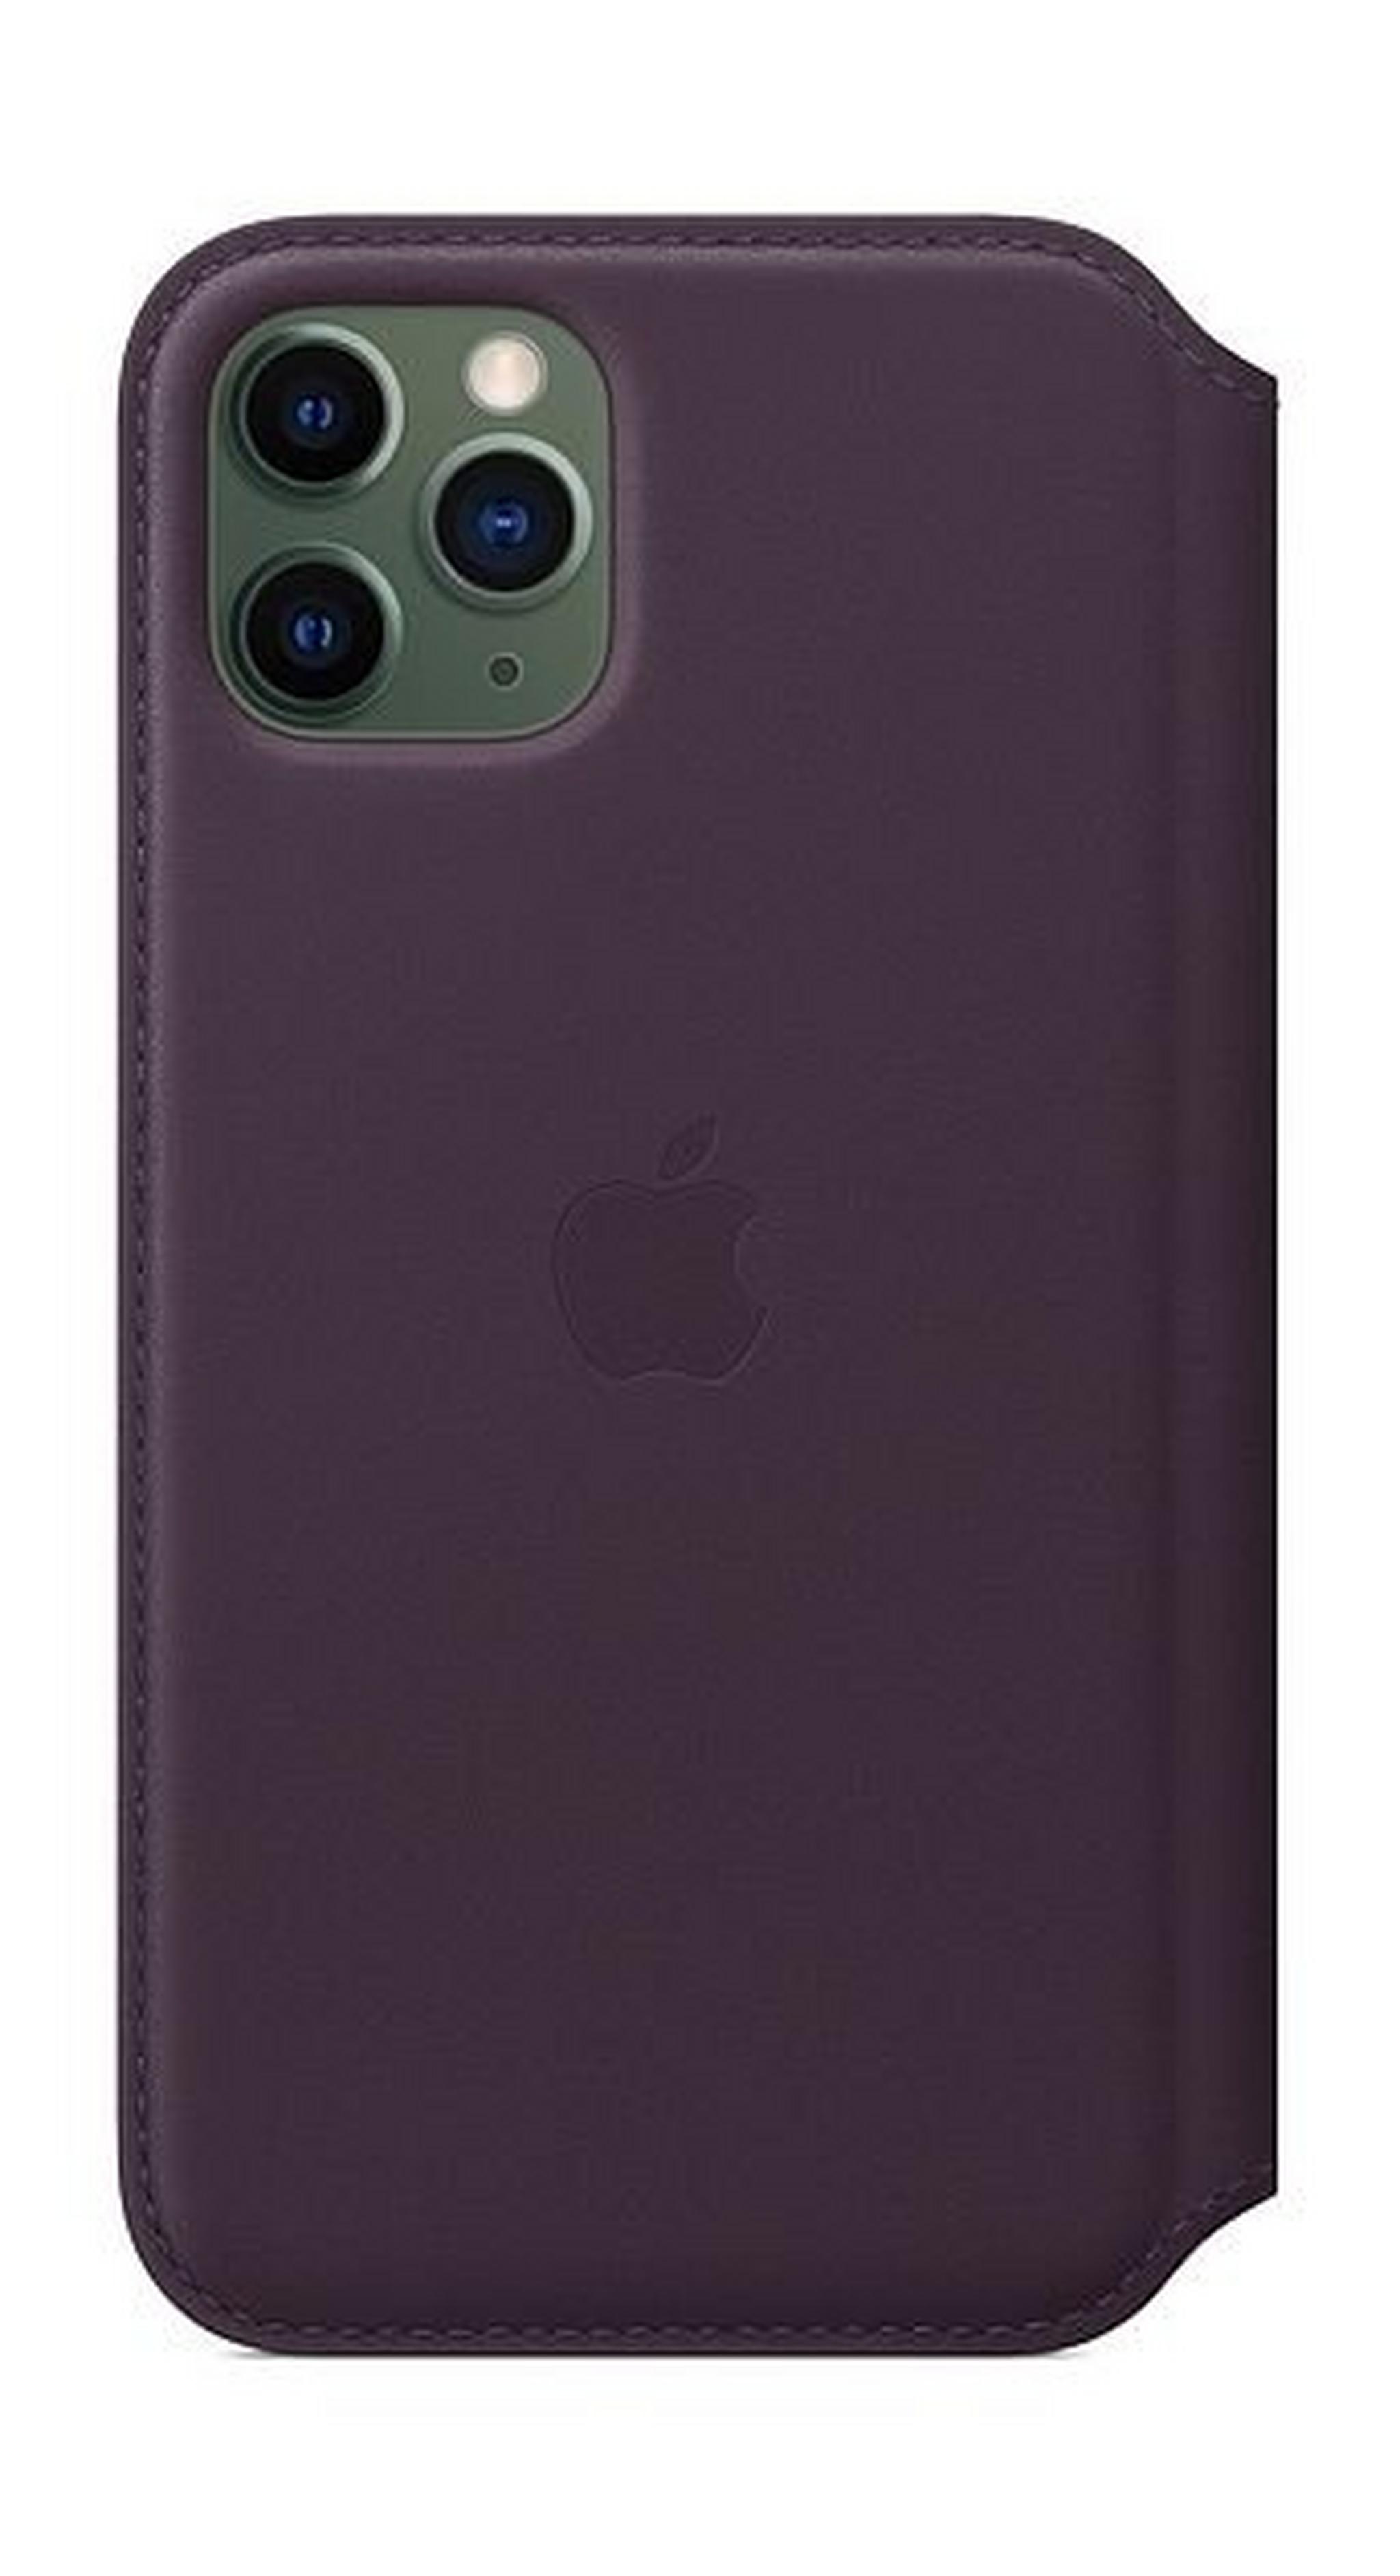 Apple iPhone 11 Pro Leather Folio Case - Aubergine